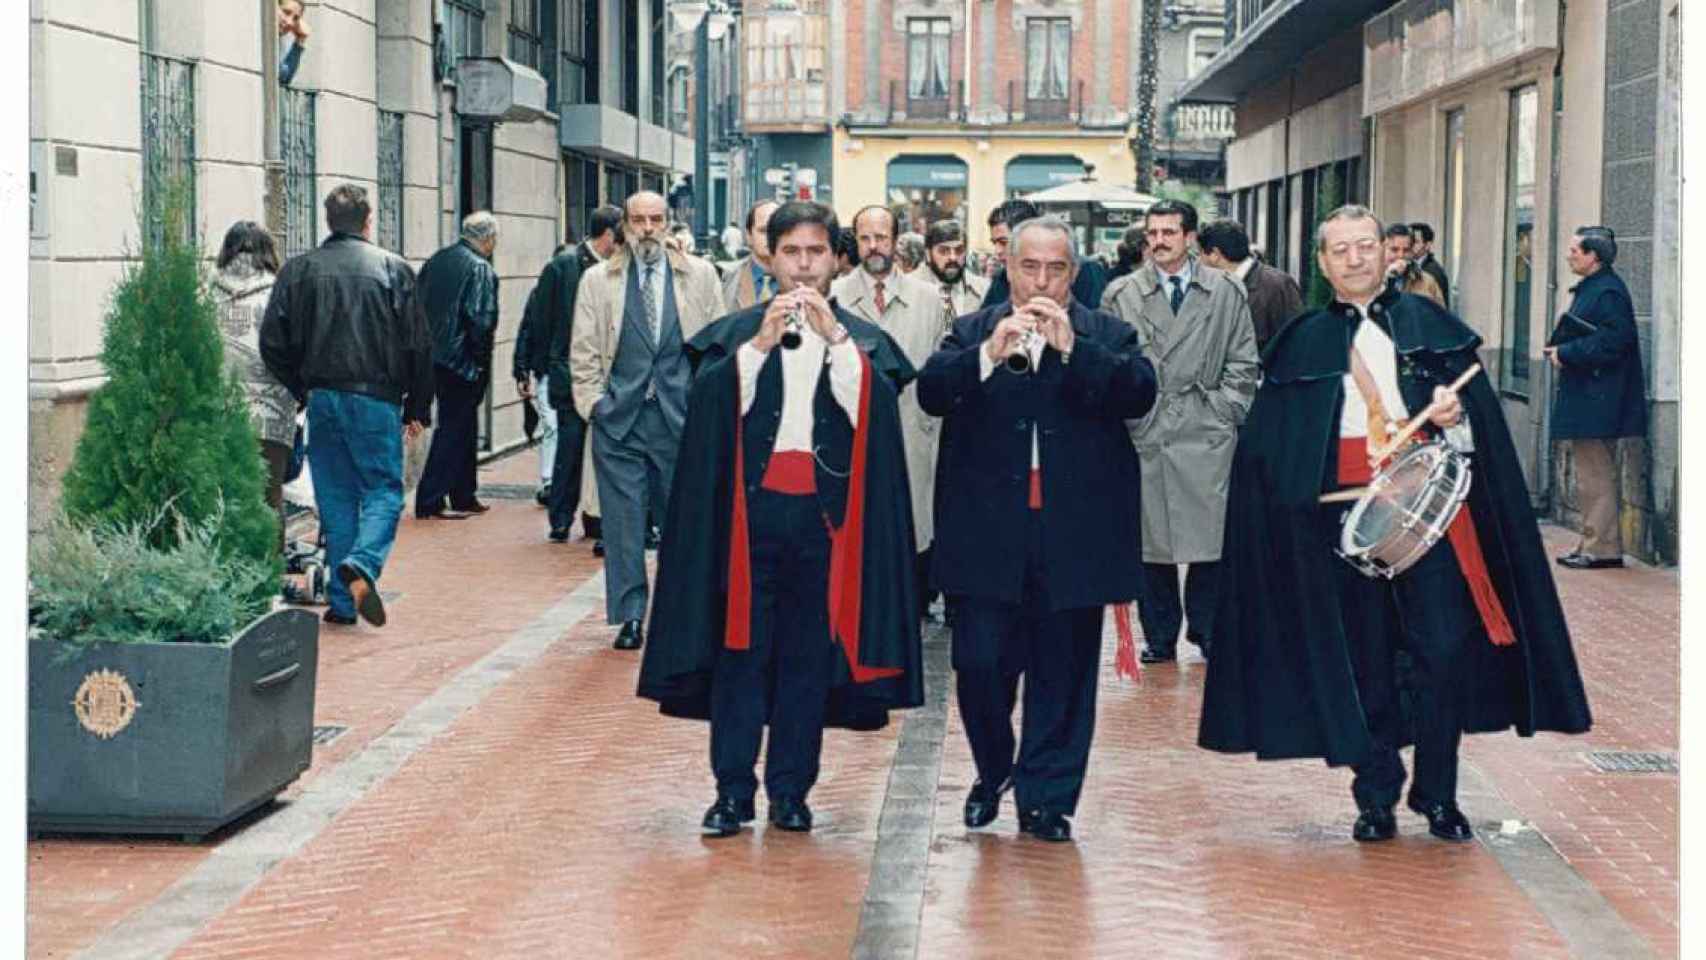 Inauguración de la reformada calle de Montero Calvo en Valladolid, ya peatonalizada, con presencia del entonces alcalde de la ciudad, Javier León de la Riva, el 19 de diciembre de 1996.